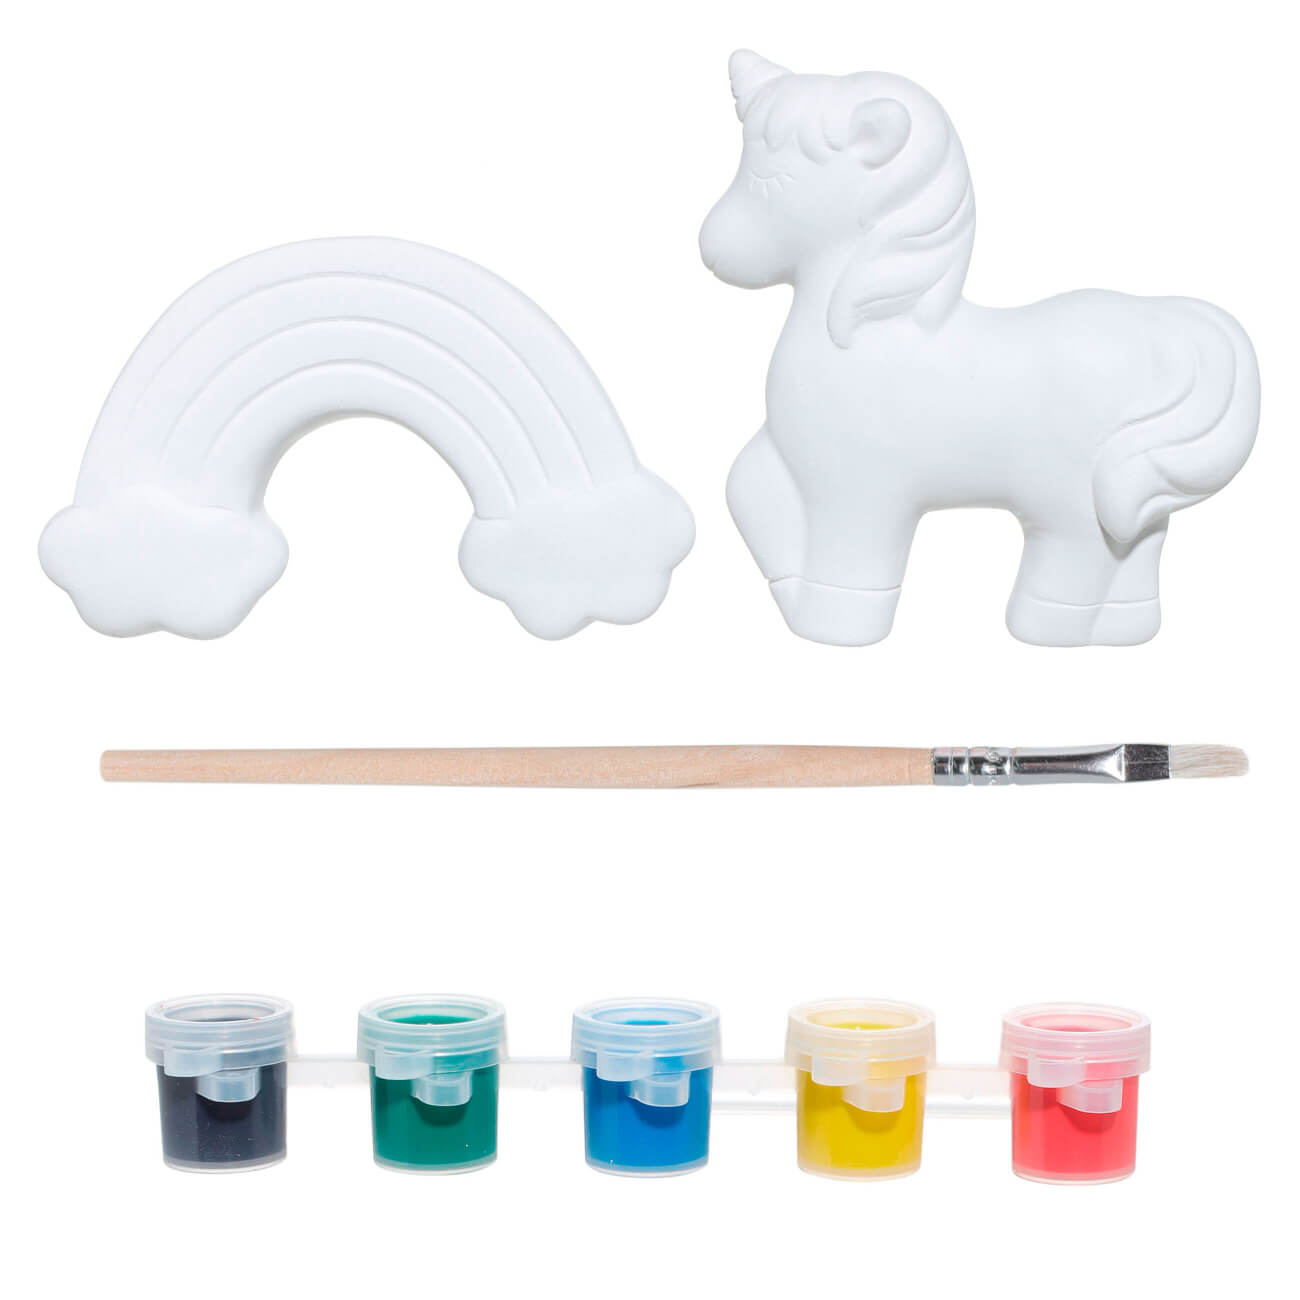 Набор для творчества, 2 пр, роспись, керамика, Единорог и радуга, Unicorn набор посуды детский 3 пр фарфор f бело розовый единорог в облаках unicorn